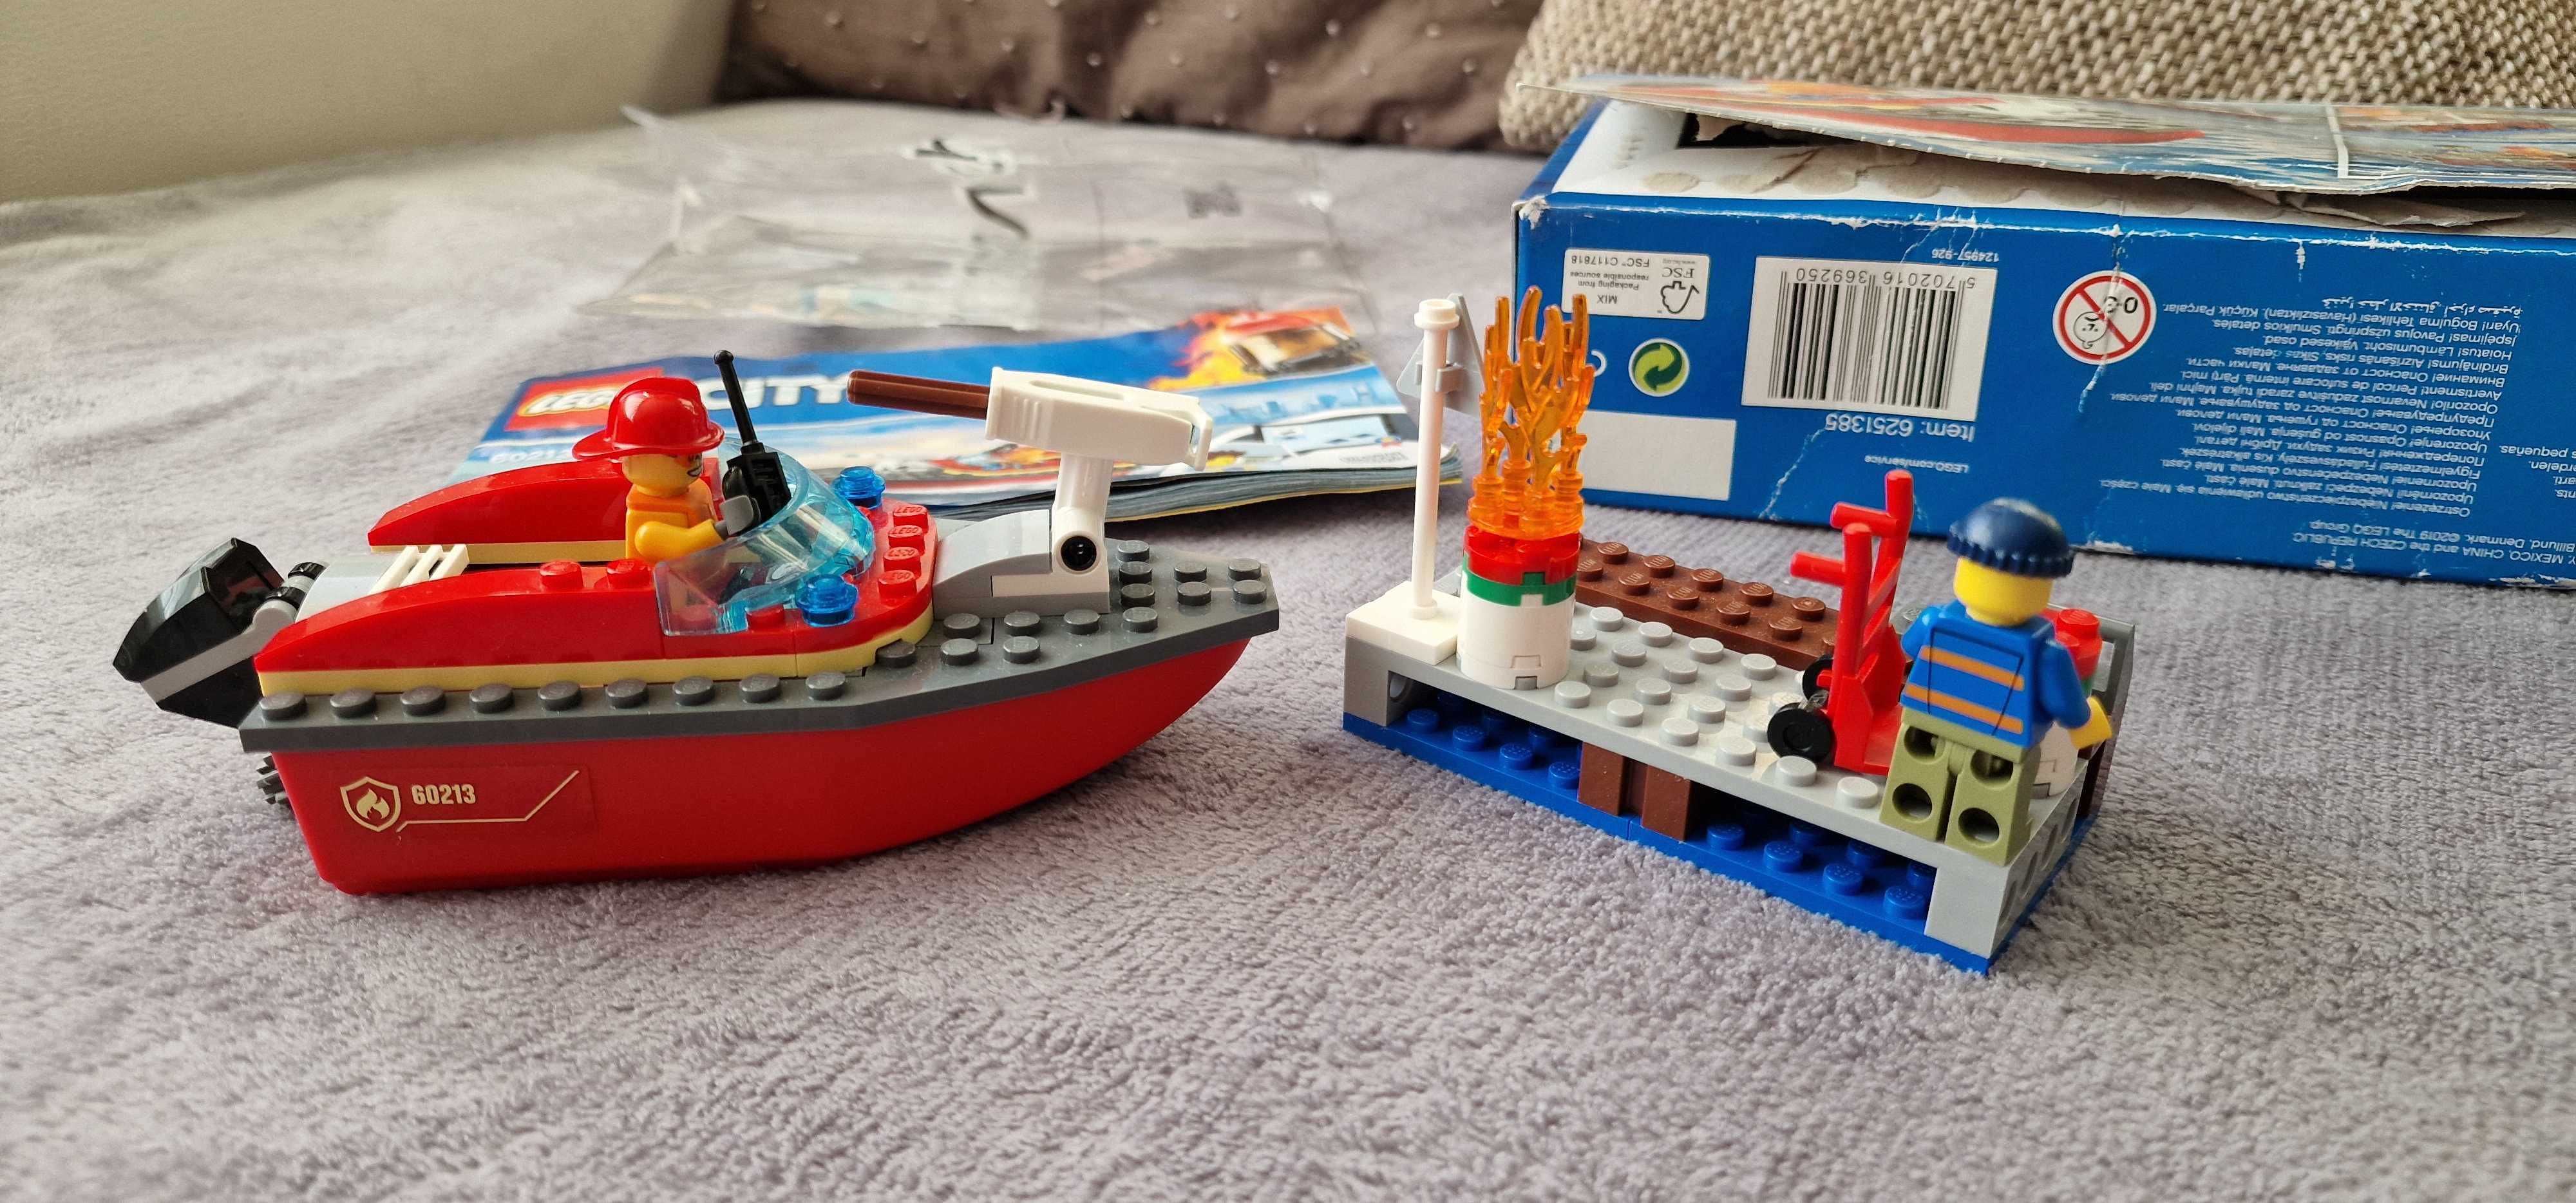 LEGO City 60213 - Dock Side Fire